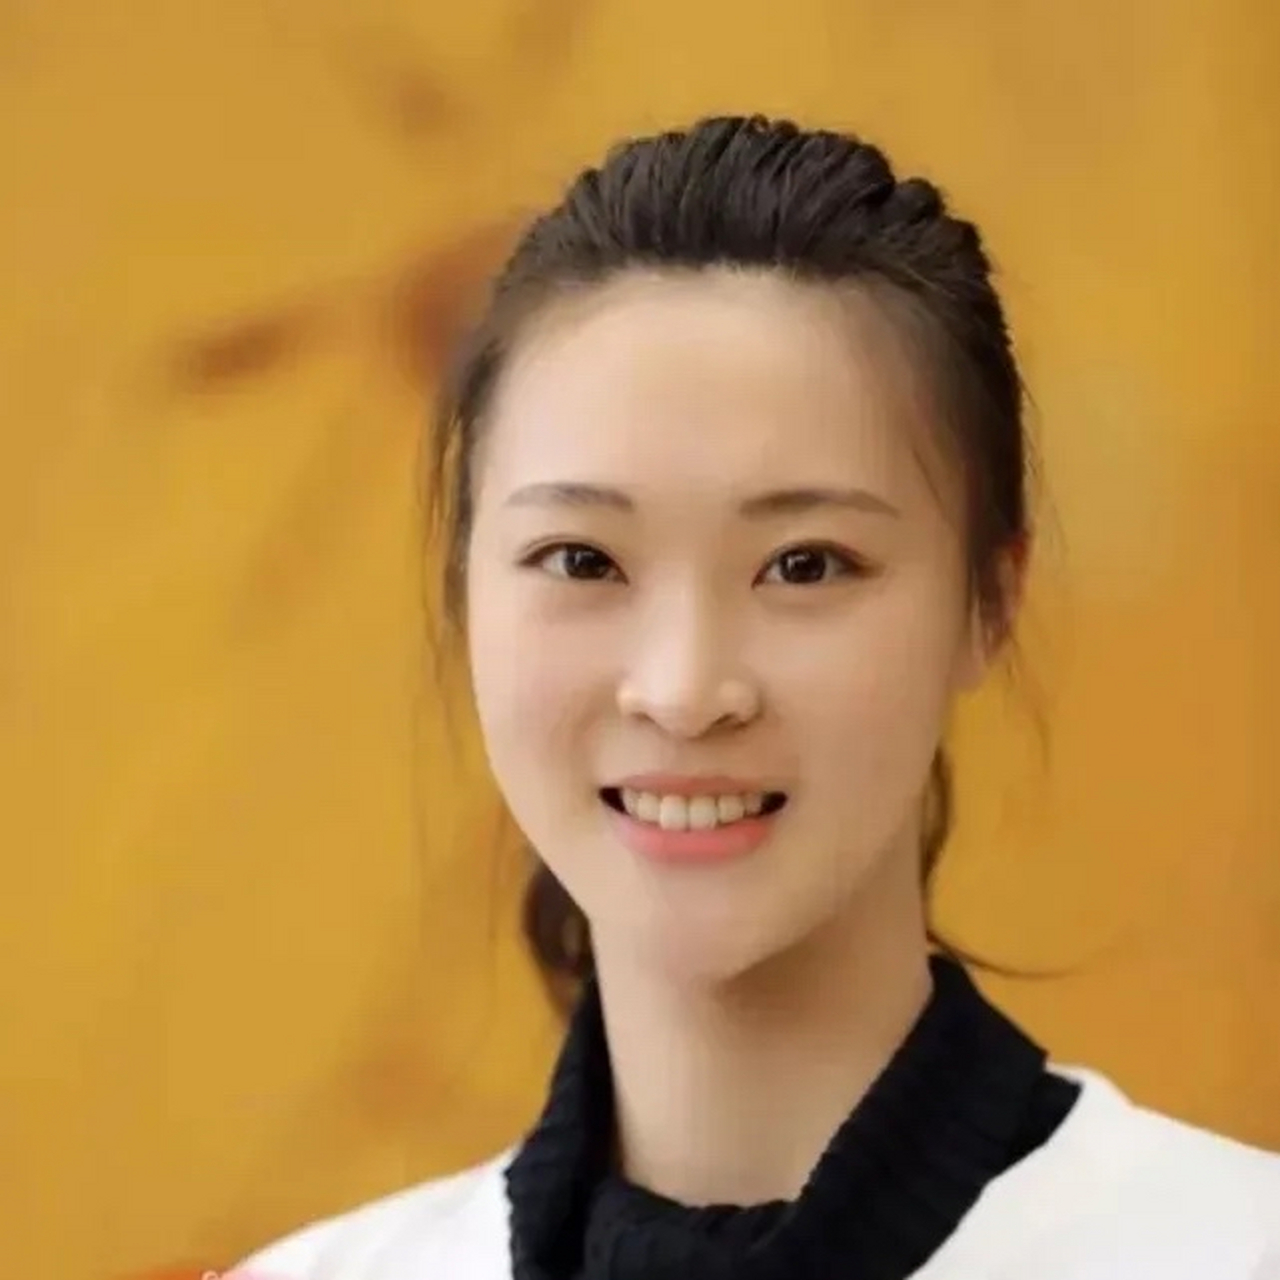 中国女排最美队员图片